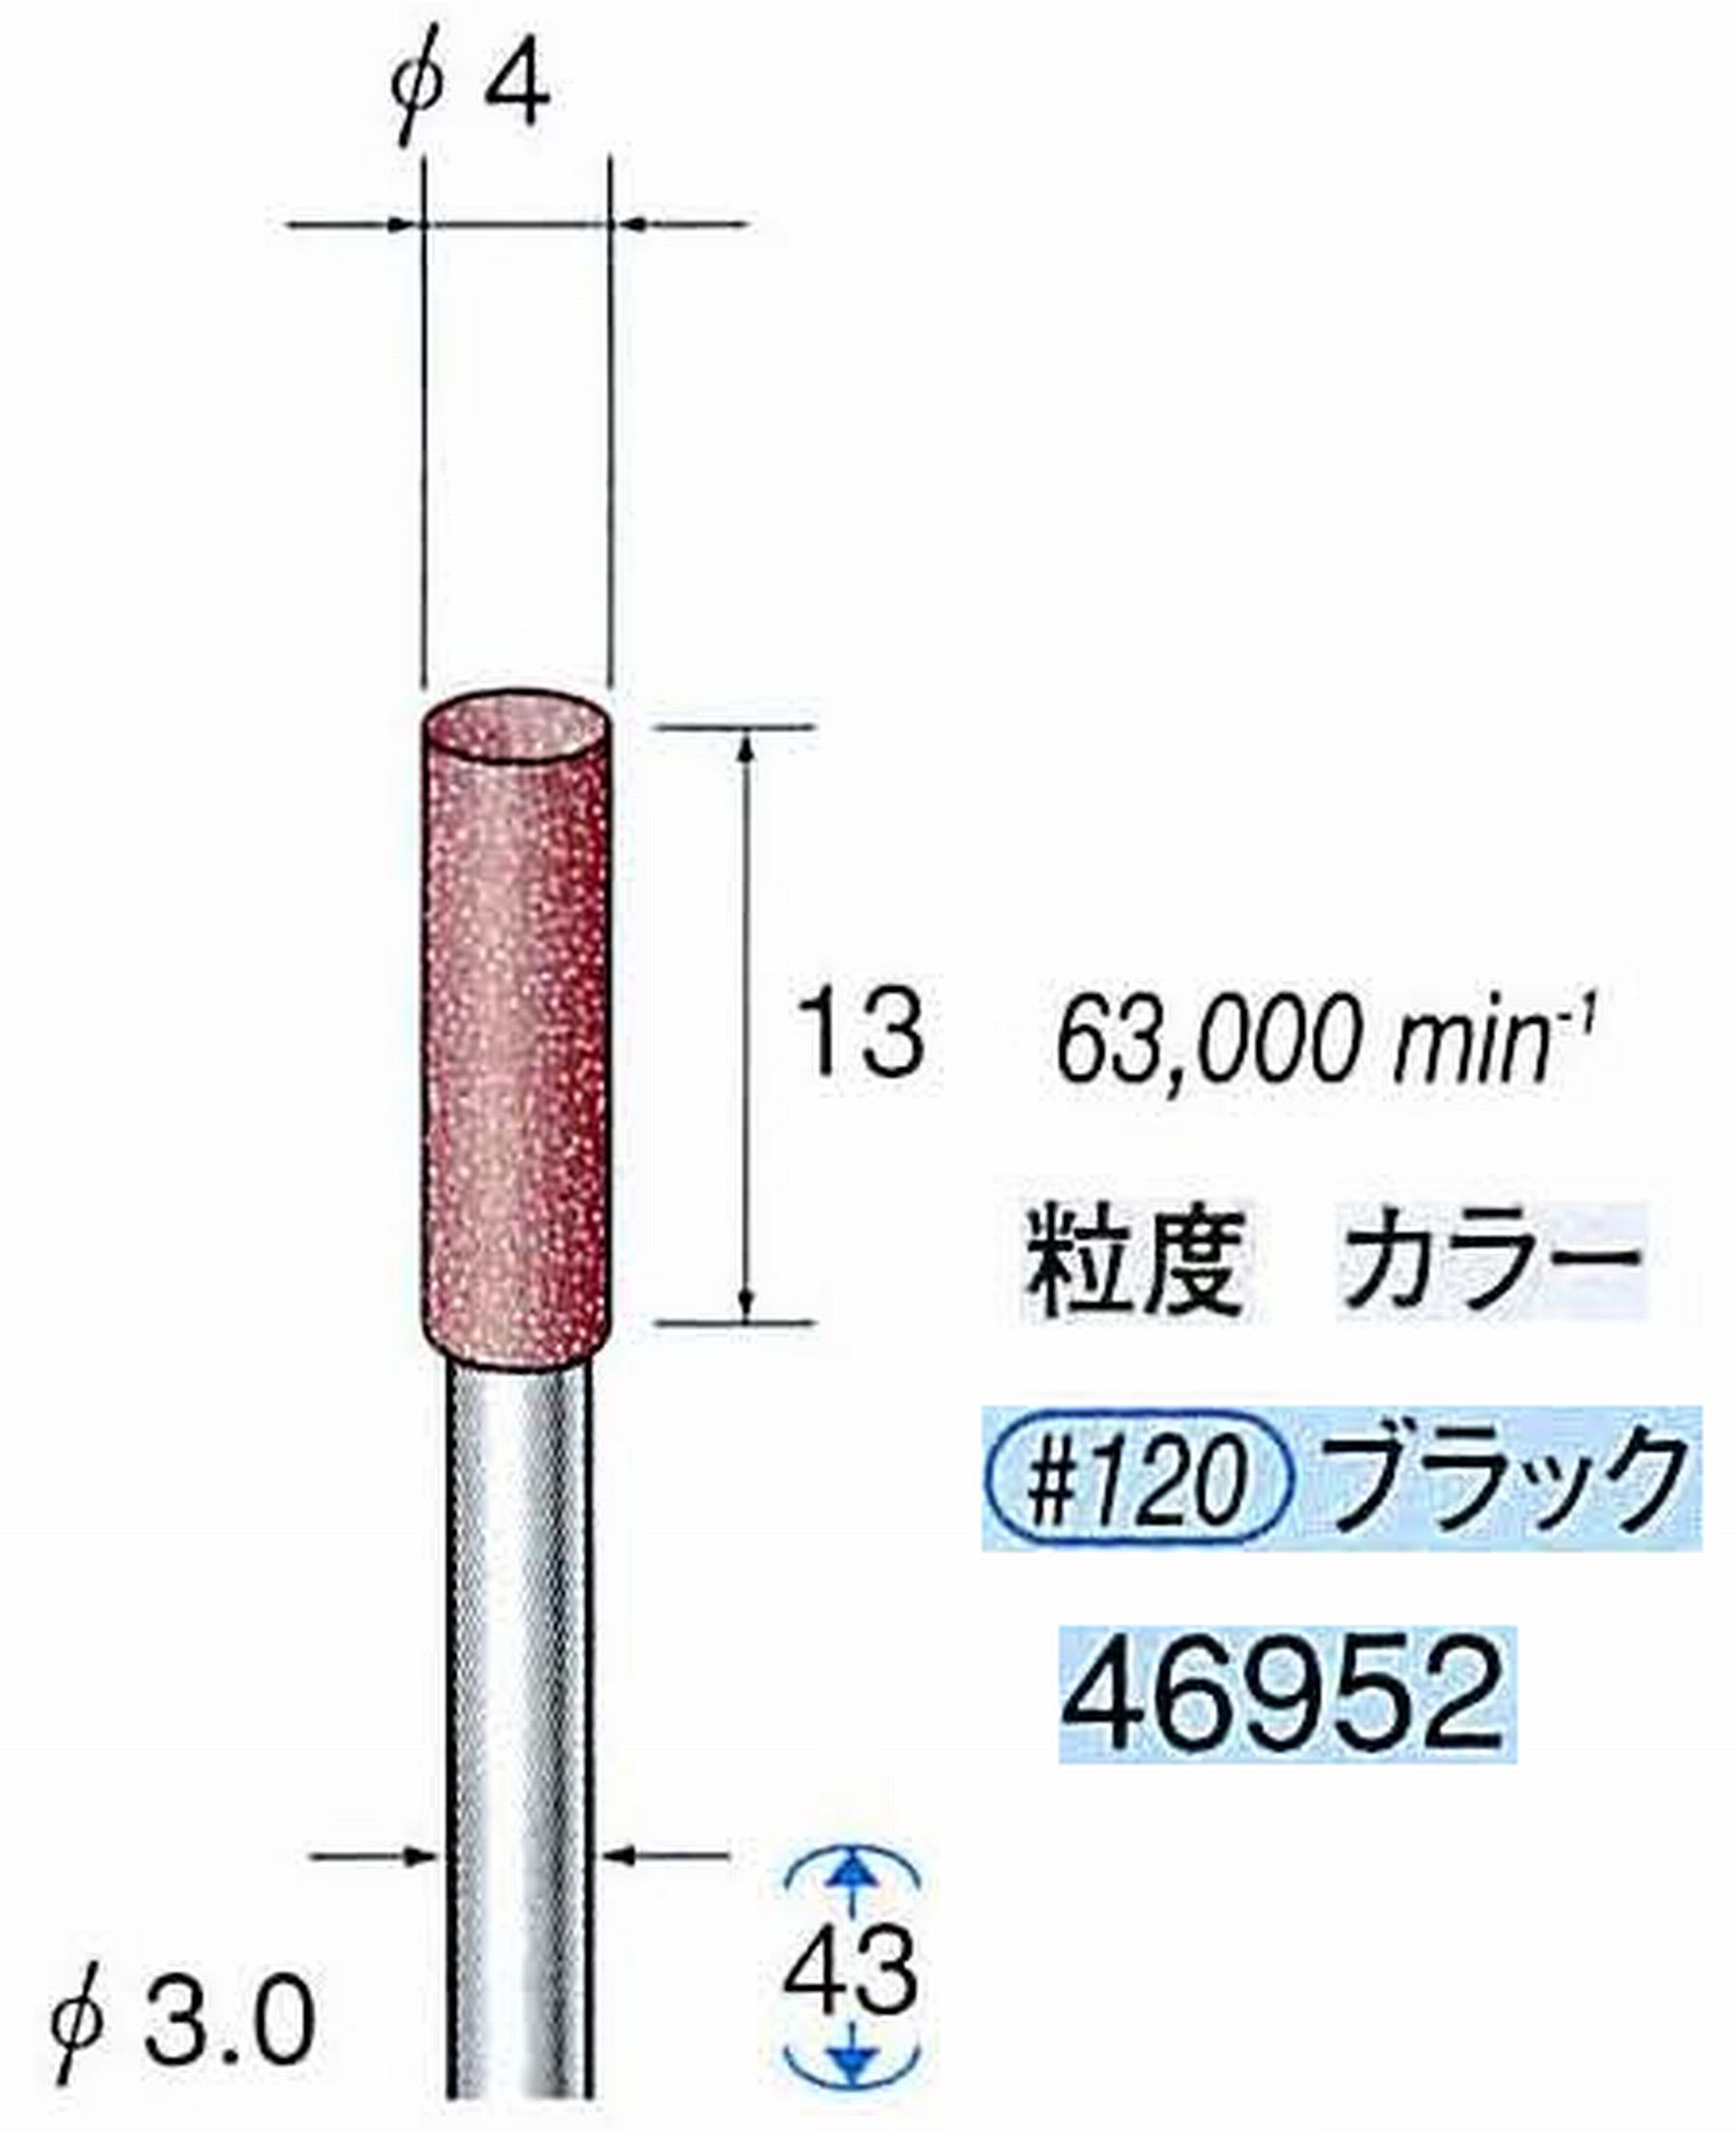 ナカニシ/NAKANISHI 高速回転用スペシャルゴム砥石(WA砥粒)ゴム質の硬さ：ミディアム 軸径(シャンク) φ3.0mm 46952